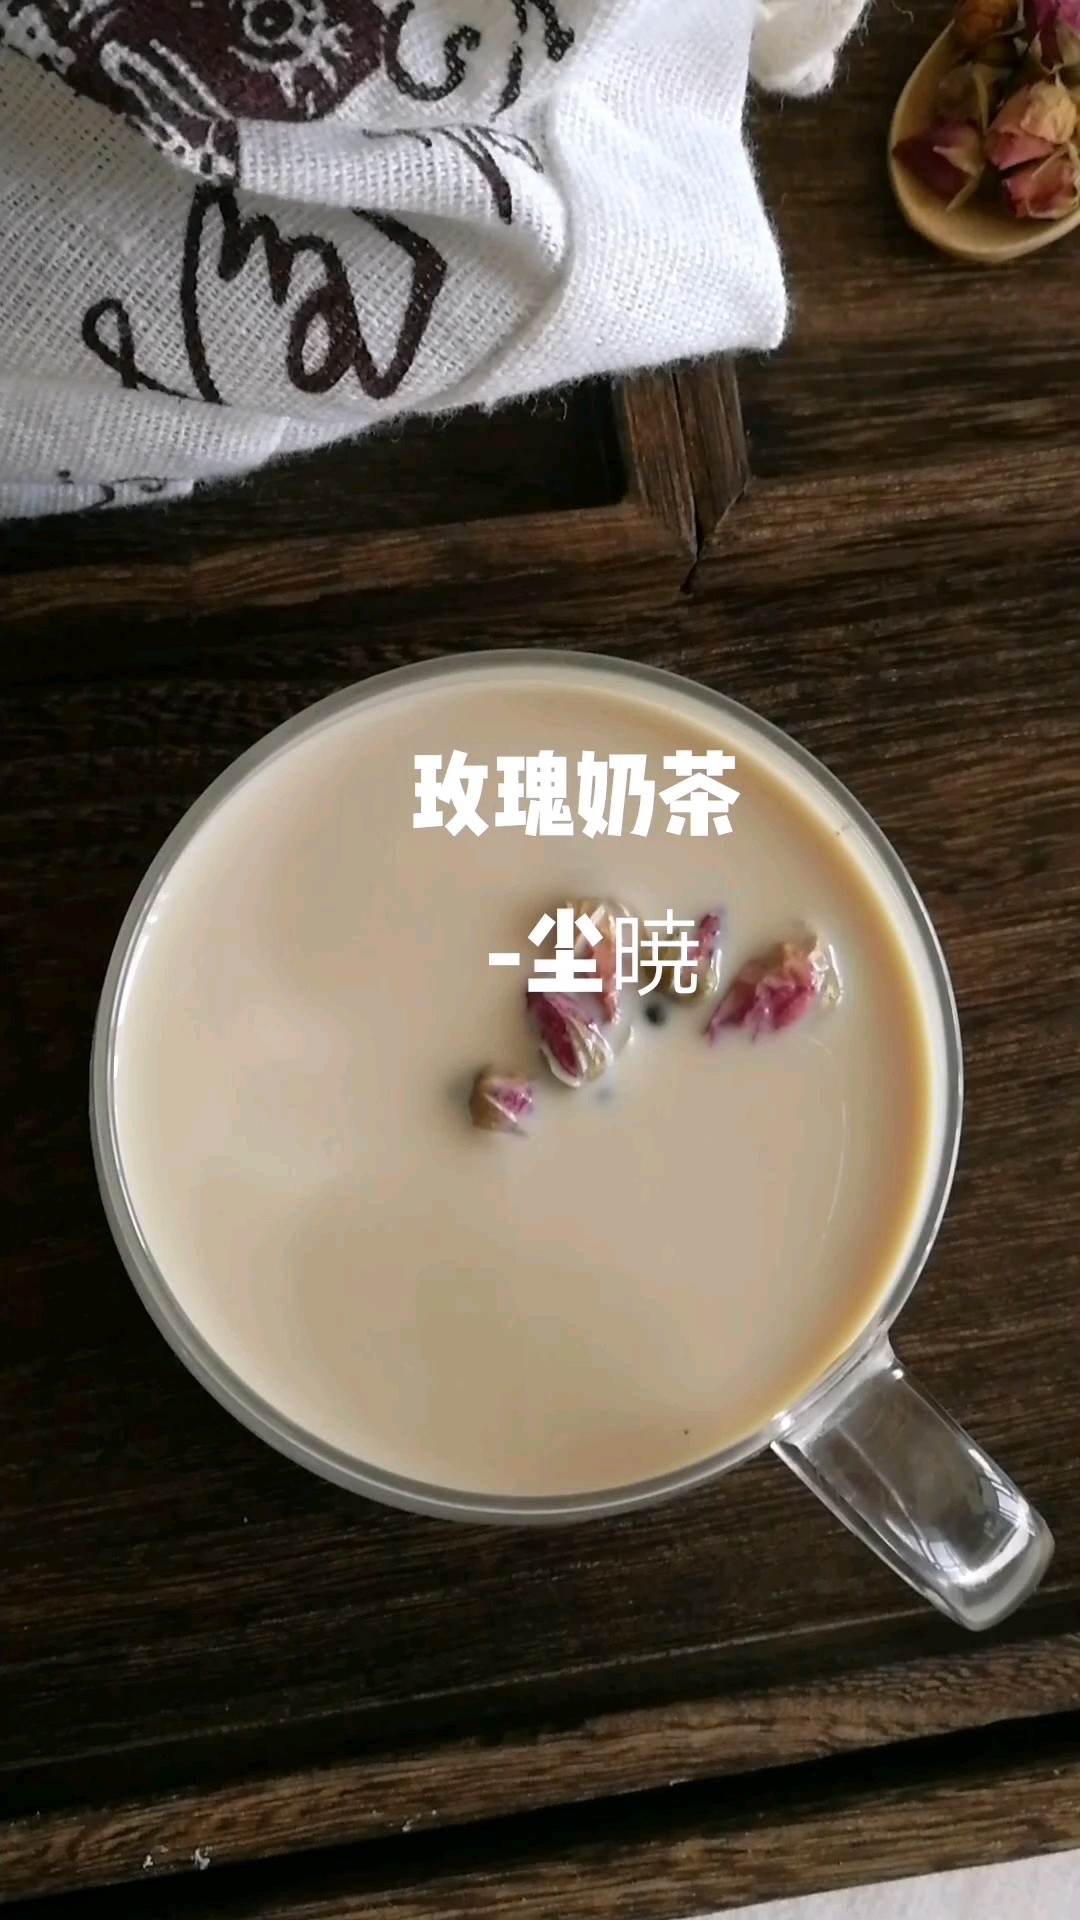 Rose Milk Tea recipe